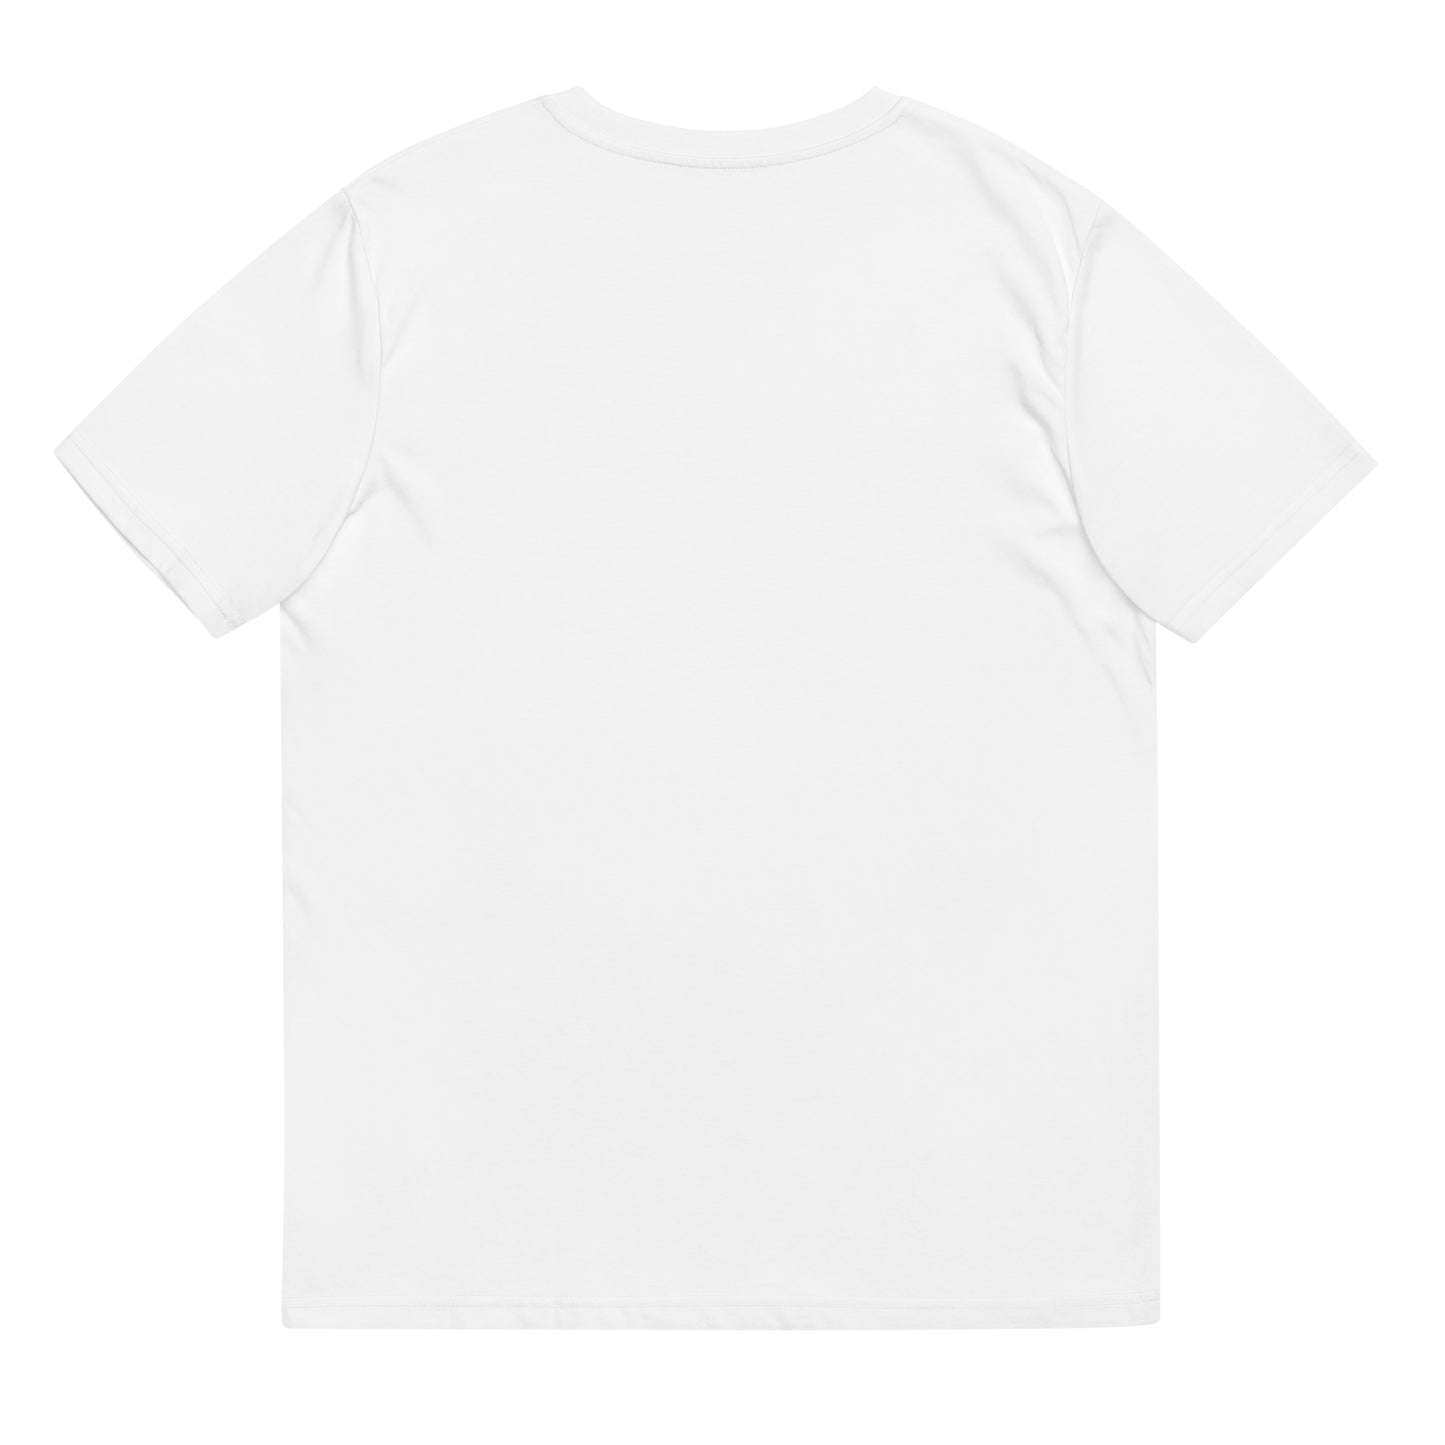 Kimberly - Unisex Organic Cotton T-Shirt